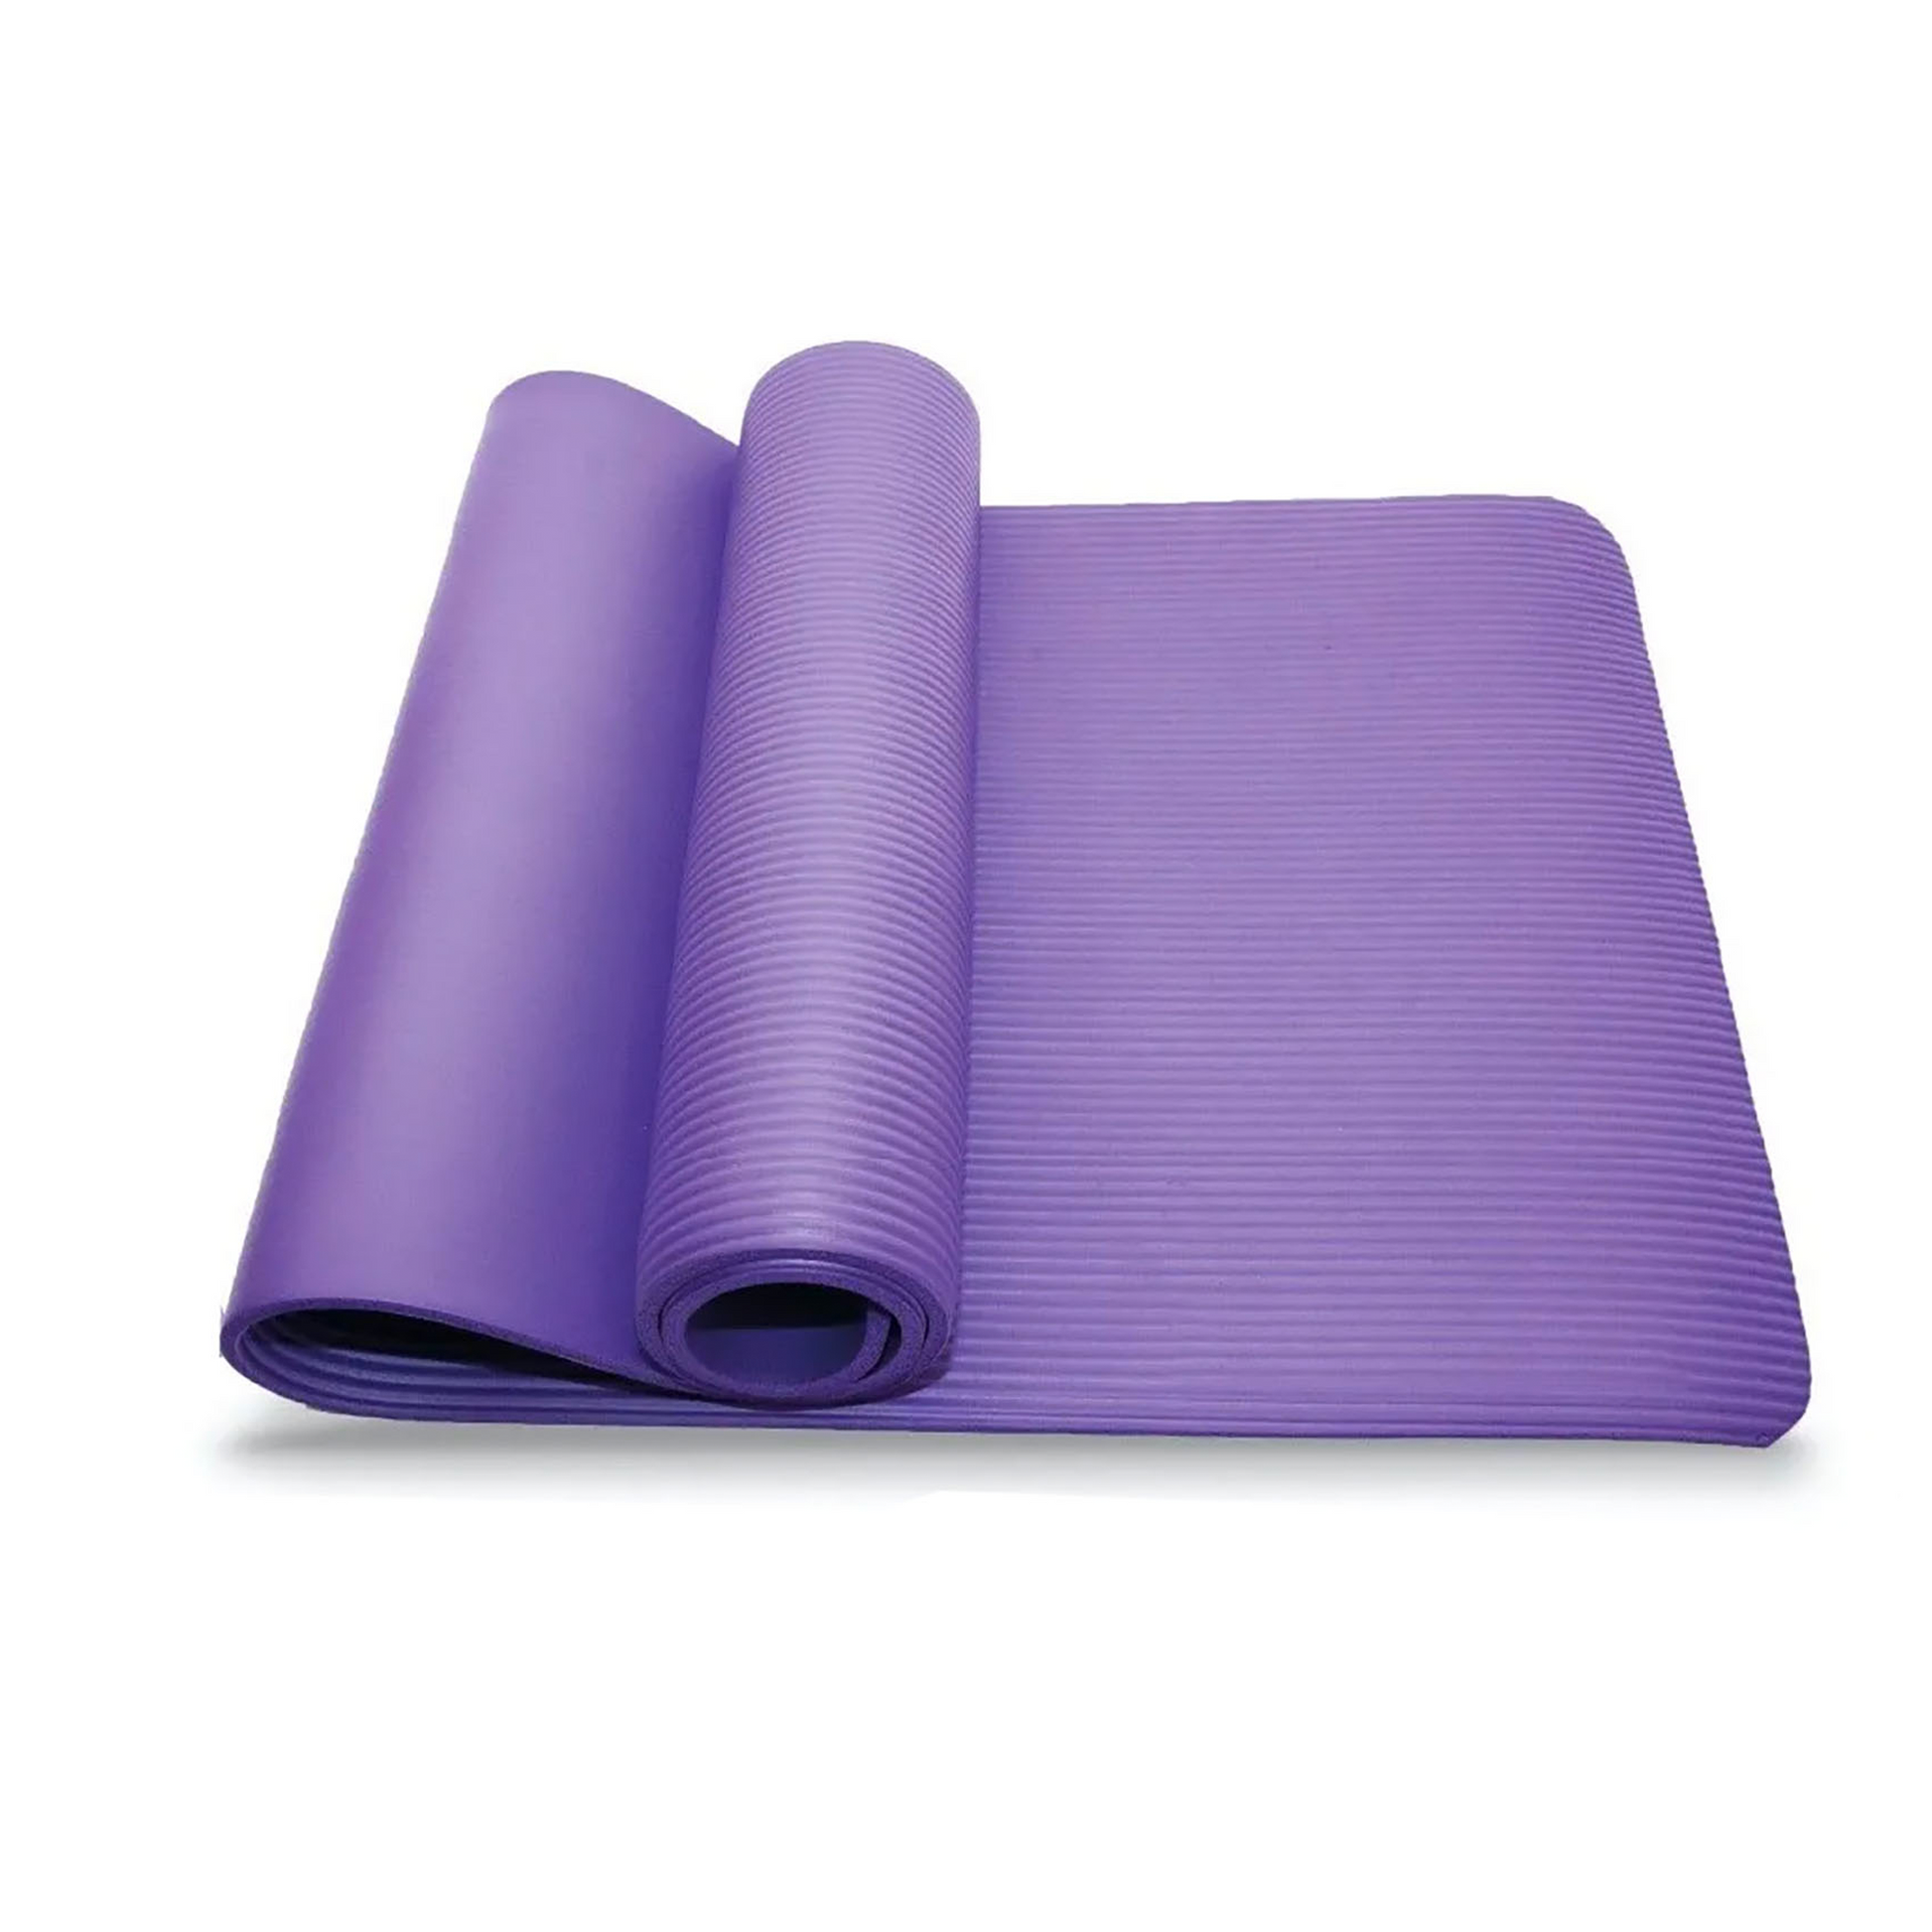 Cómo escoger un Yoga Mat (Esterilla o Tapete de yoga) 